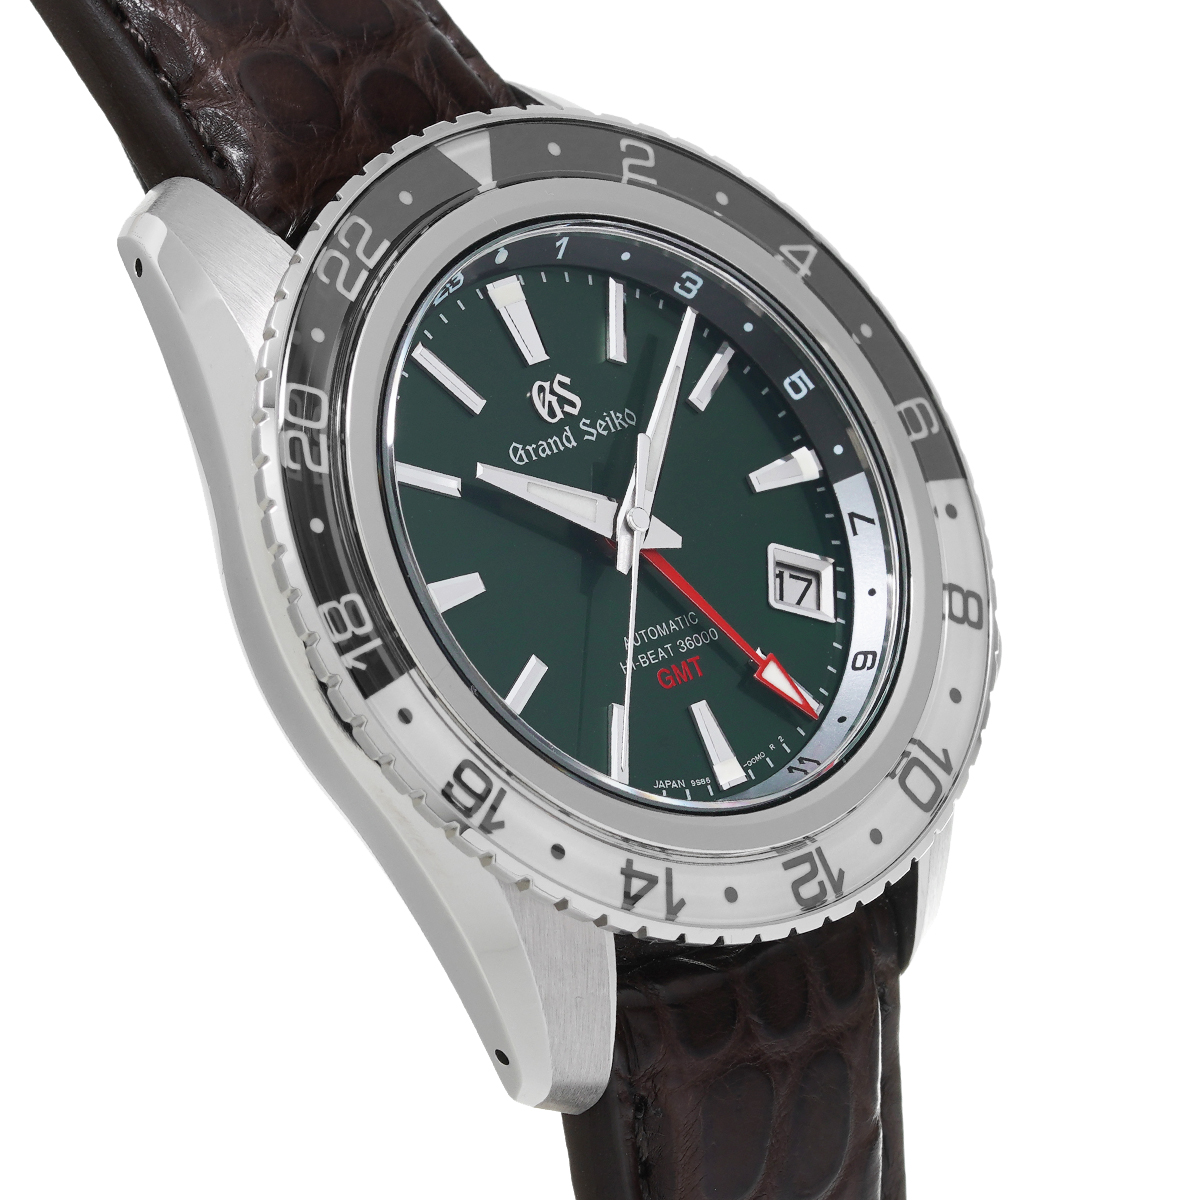 セイコー SEIKO グランドセイコー スポーツコレクション メカニカルハイビート36000 GMT SBGJ239 SS メンズ 腕時計